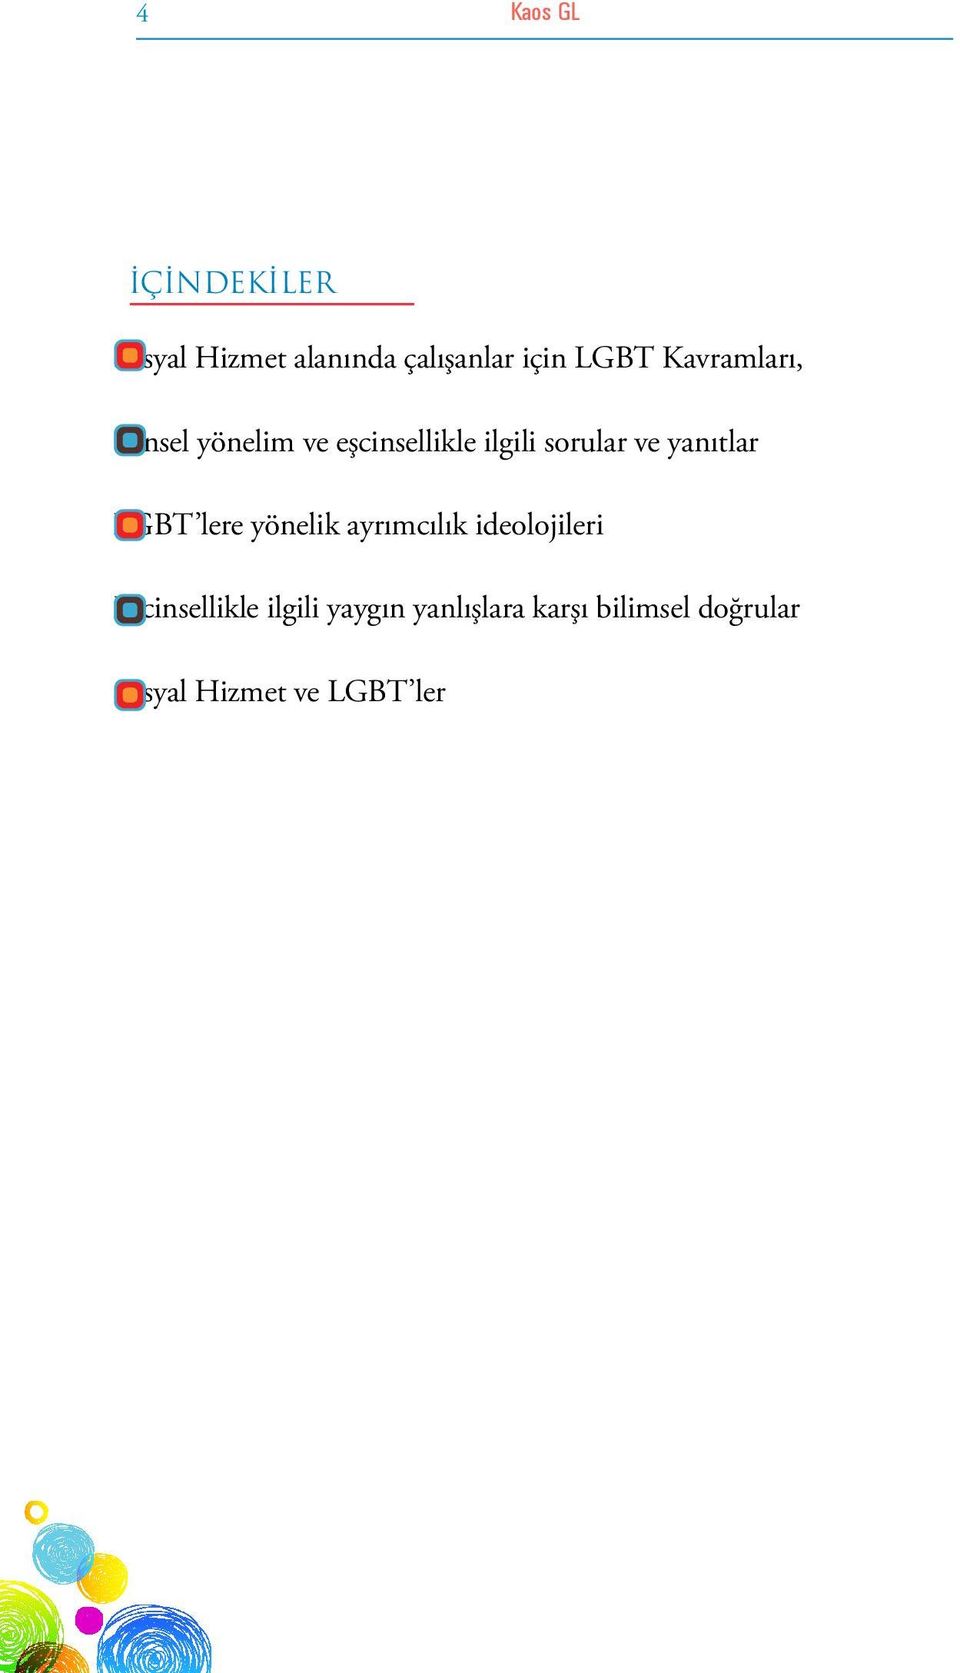 yanıtlar LGBT lere yönelik ayrımcılık ideolojileri Eşcinsellikle